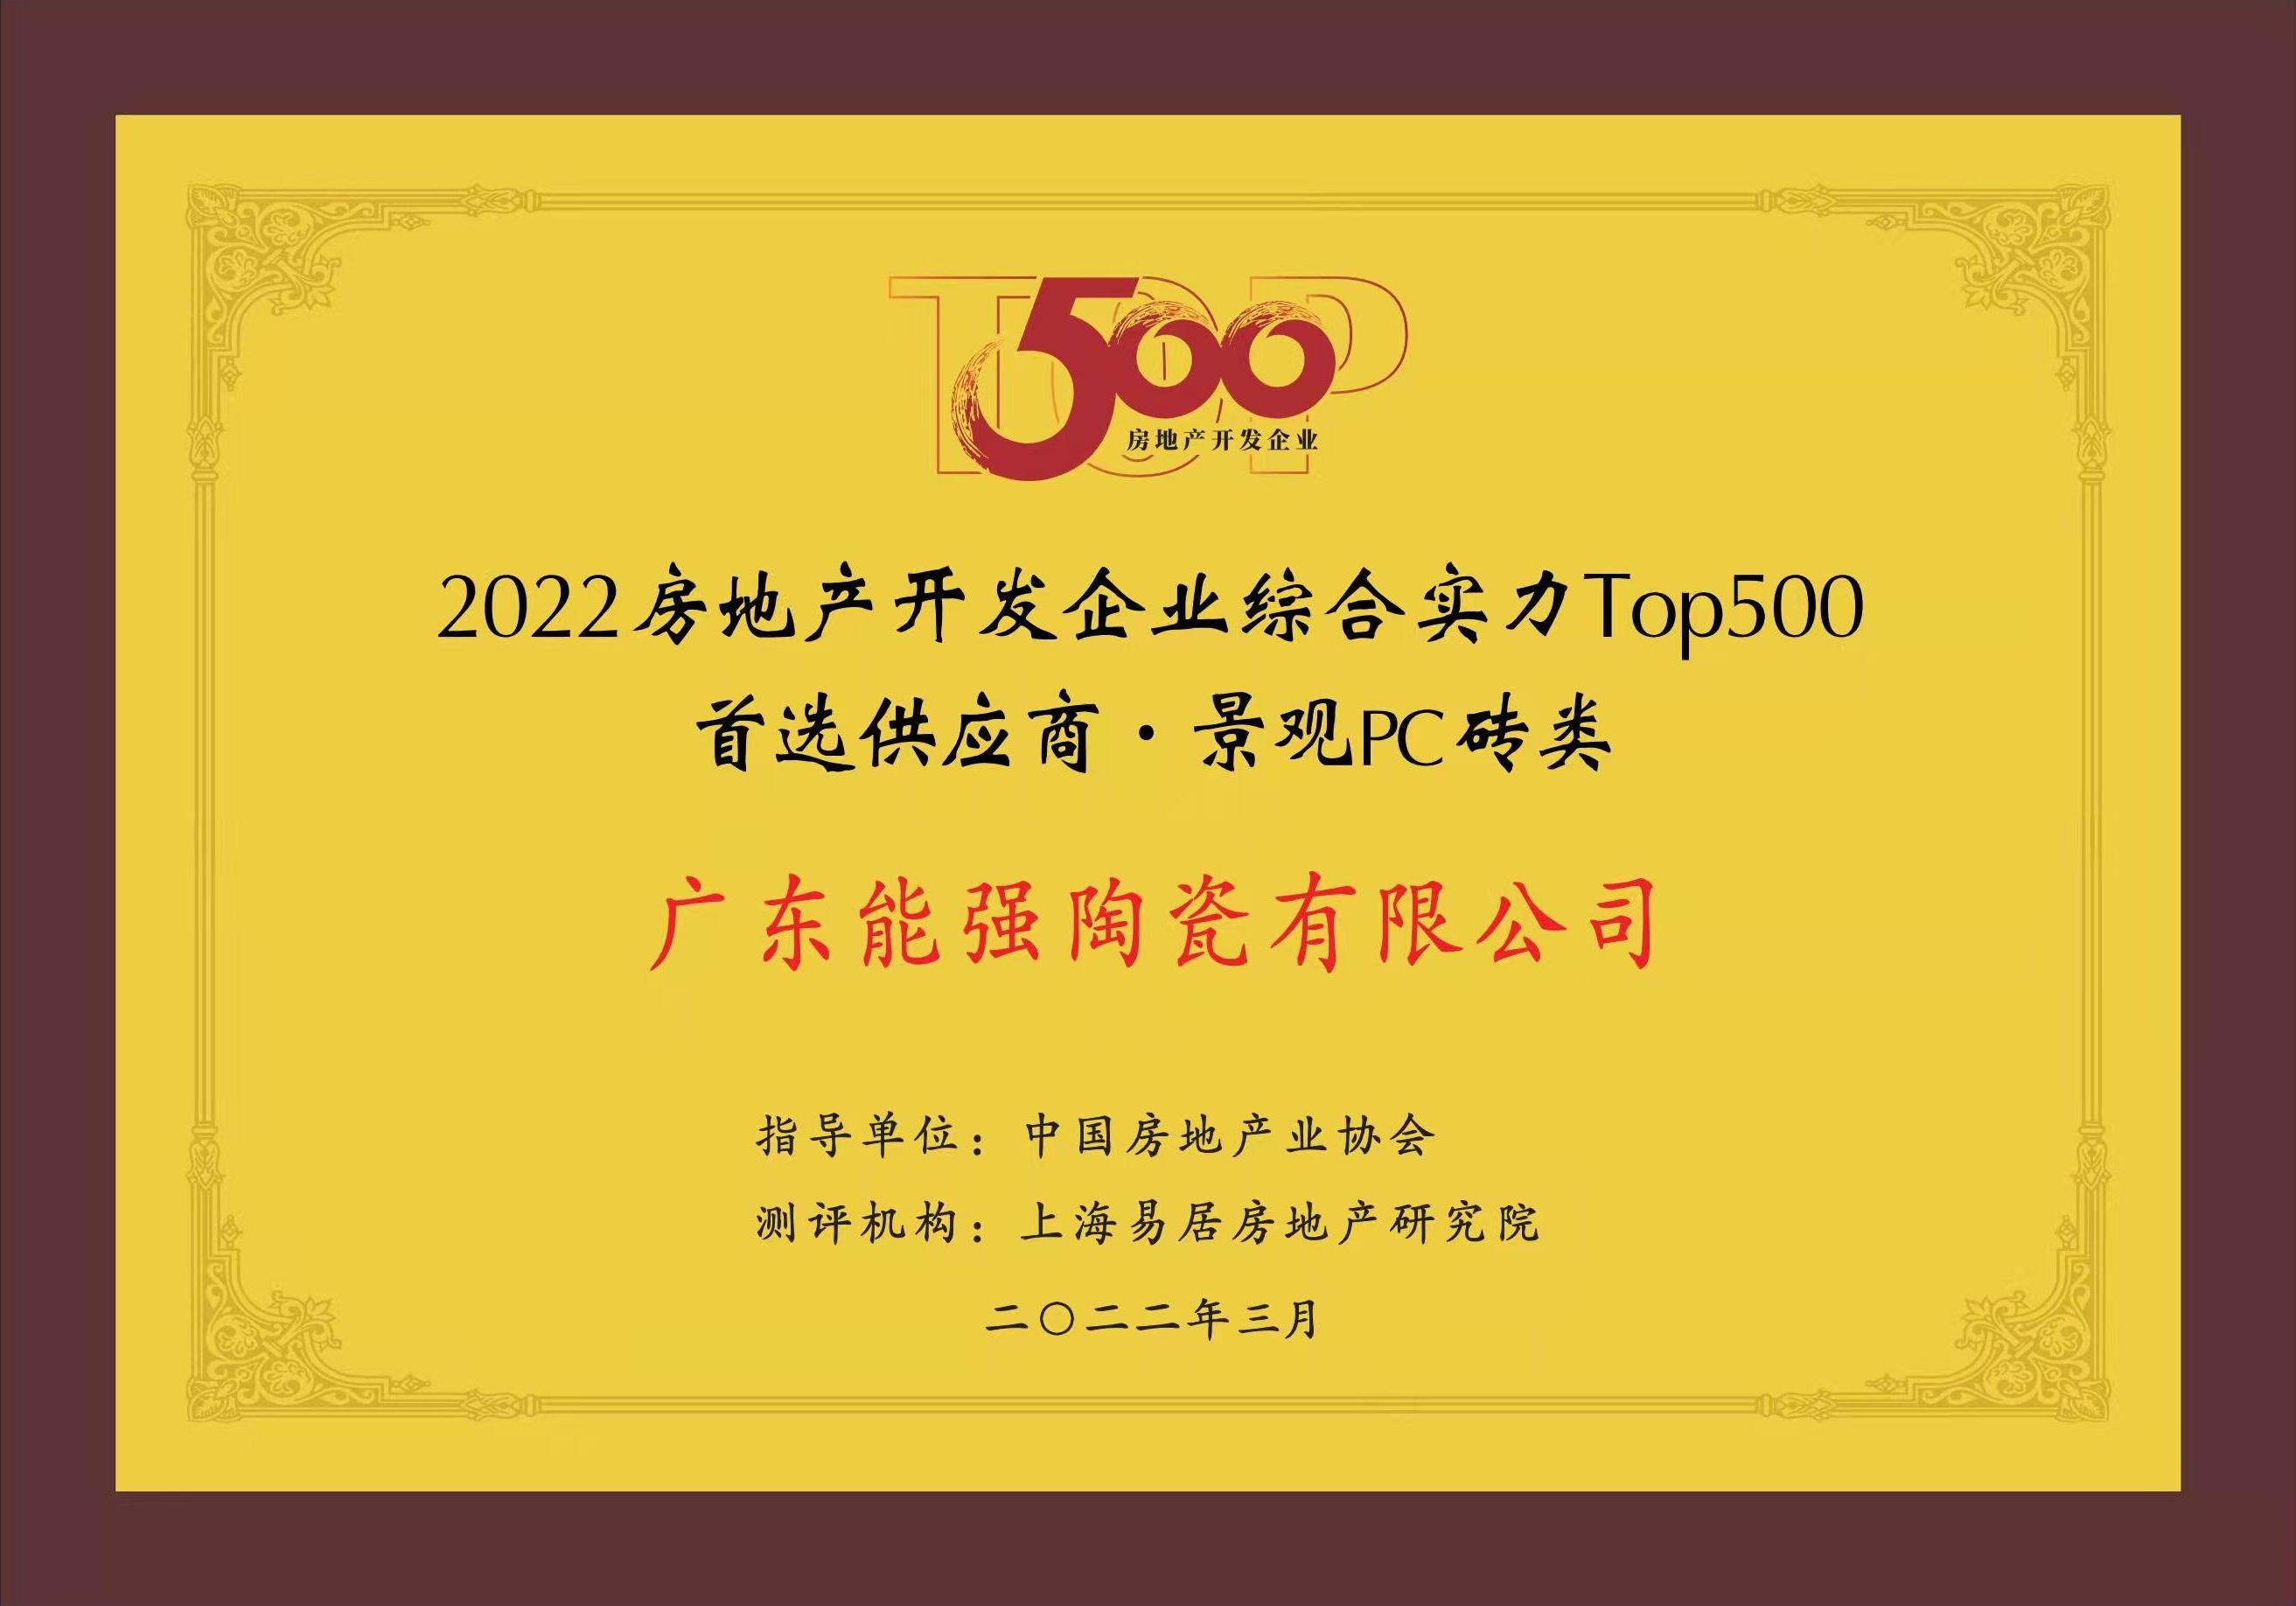 中国TOP500房地产开发企业首选供应商·景观PC砖类